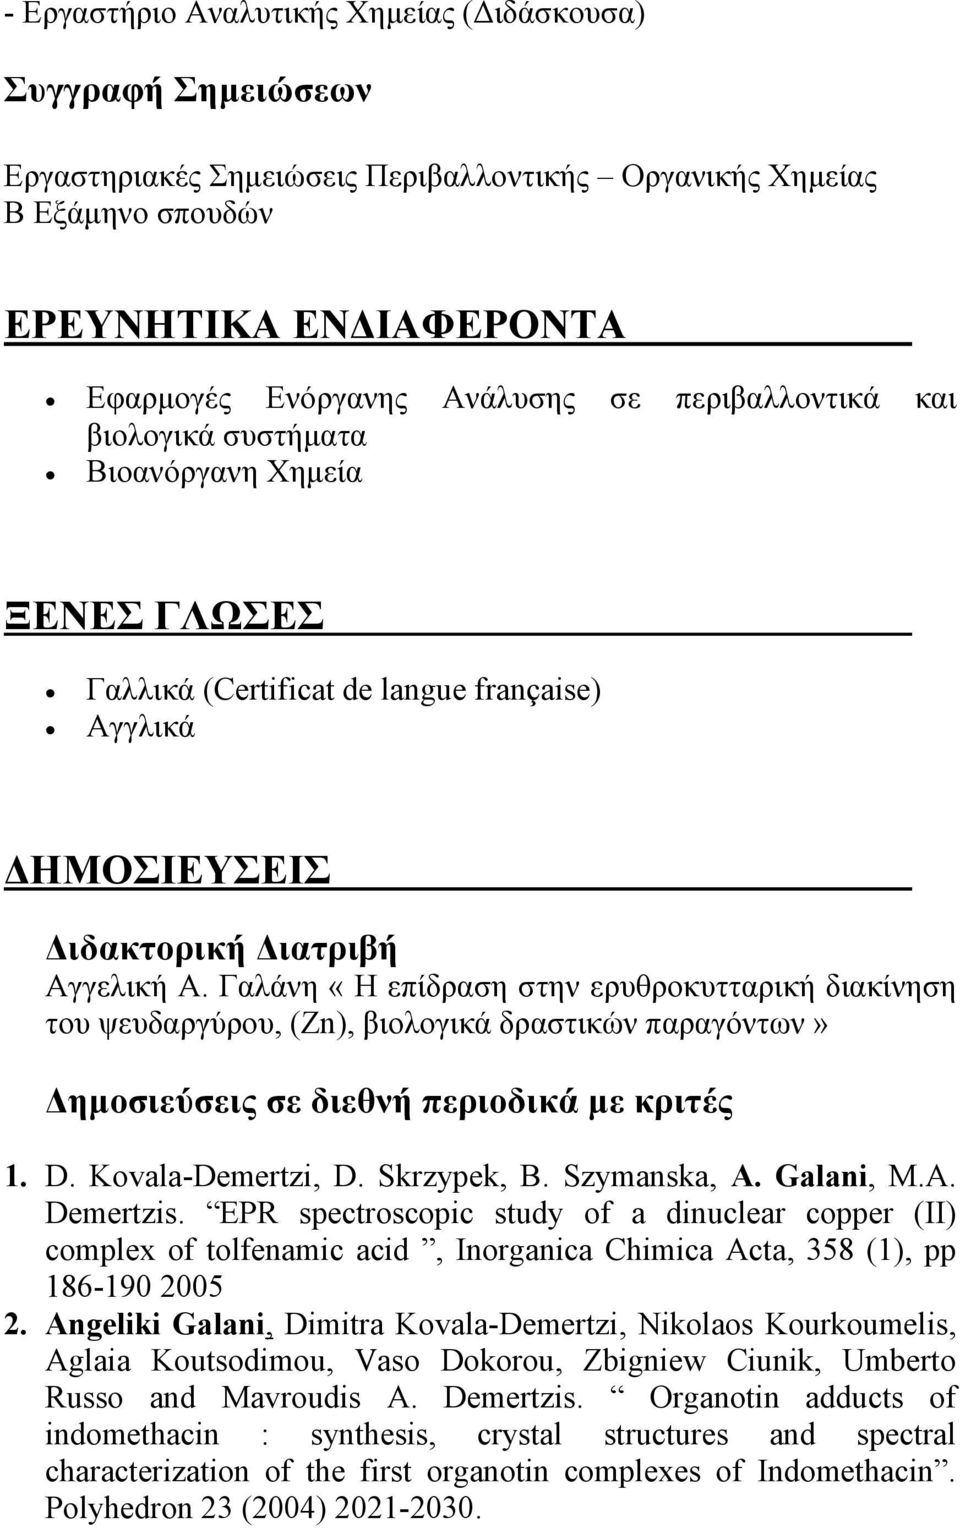 Γαλάνη «Η επίδραση στην ερυθροκυτταρική διακίνηση του ψευδαργύρου, (Zn), βιολογικά δραστικών παραγόντων» Δημοσιεύσεις σε διεθνή περιοδικά με κριτές 1. D. Kovala-Demertzi, D. Skrzypek, B. Szymanska, A.